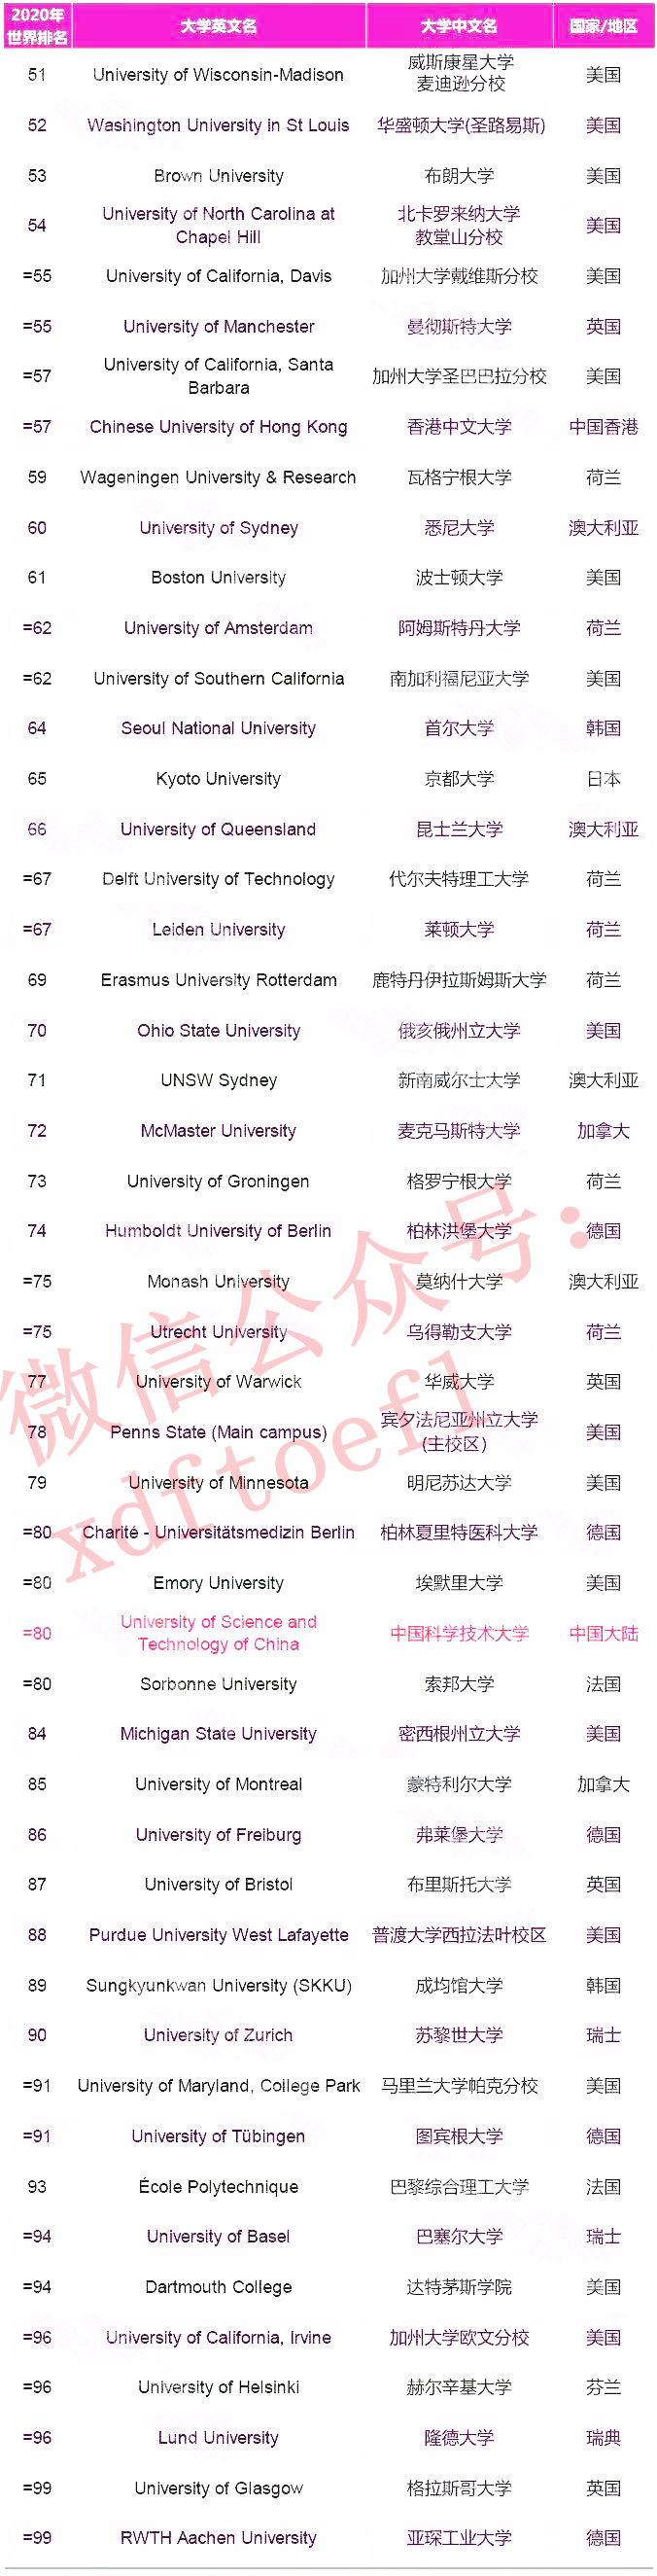 2020泰晤士世界大学排名Top200完整榜单